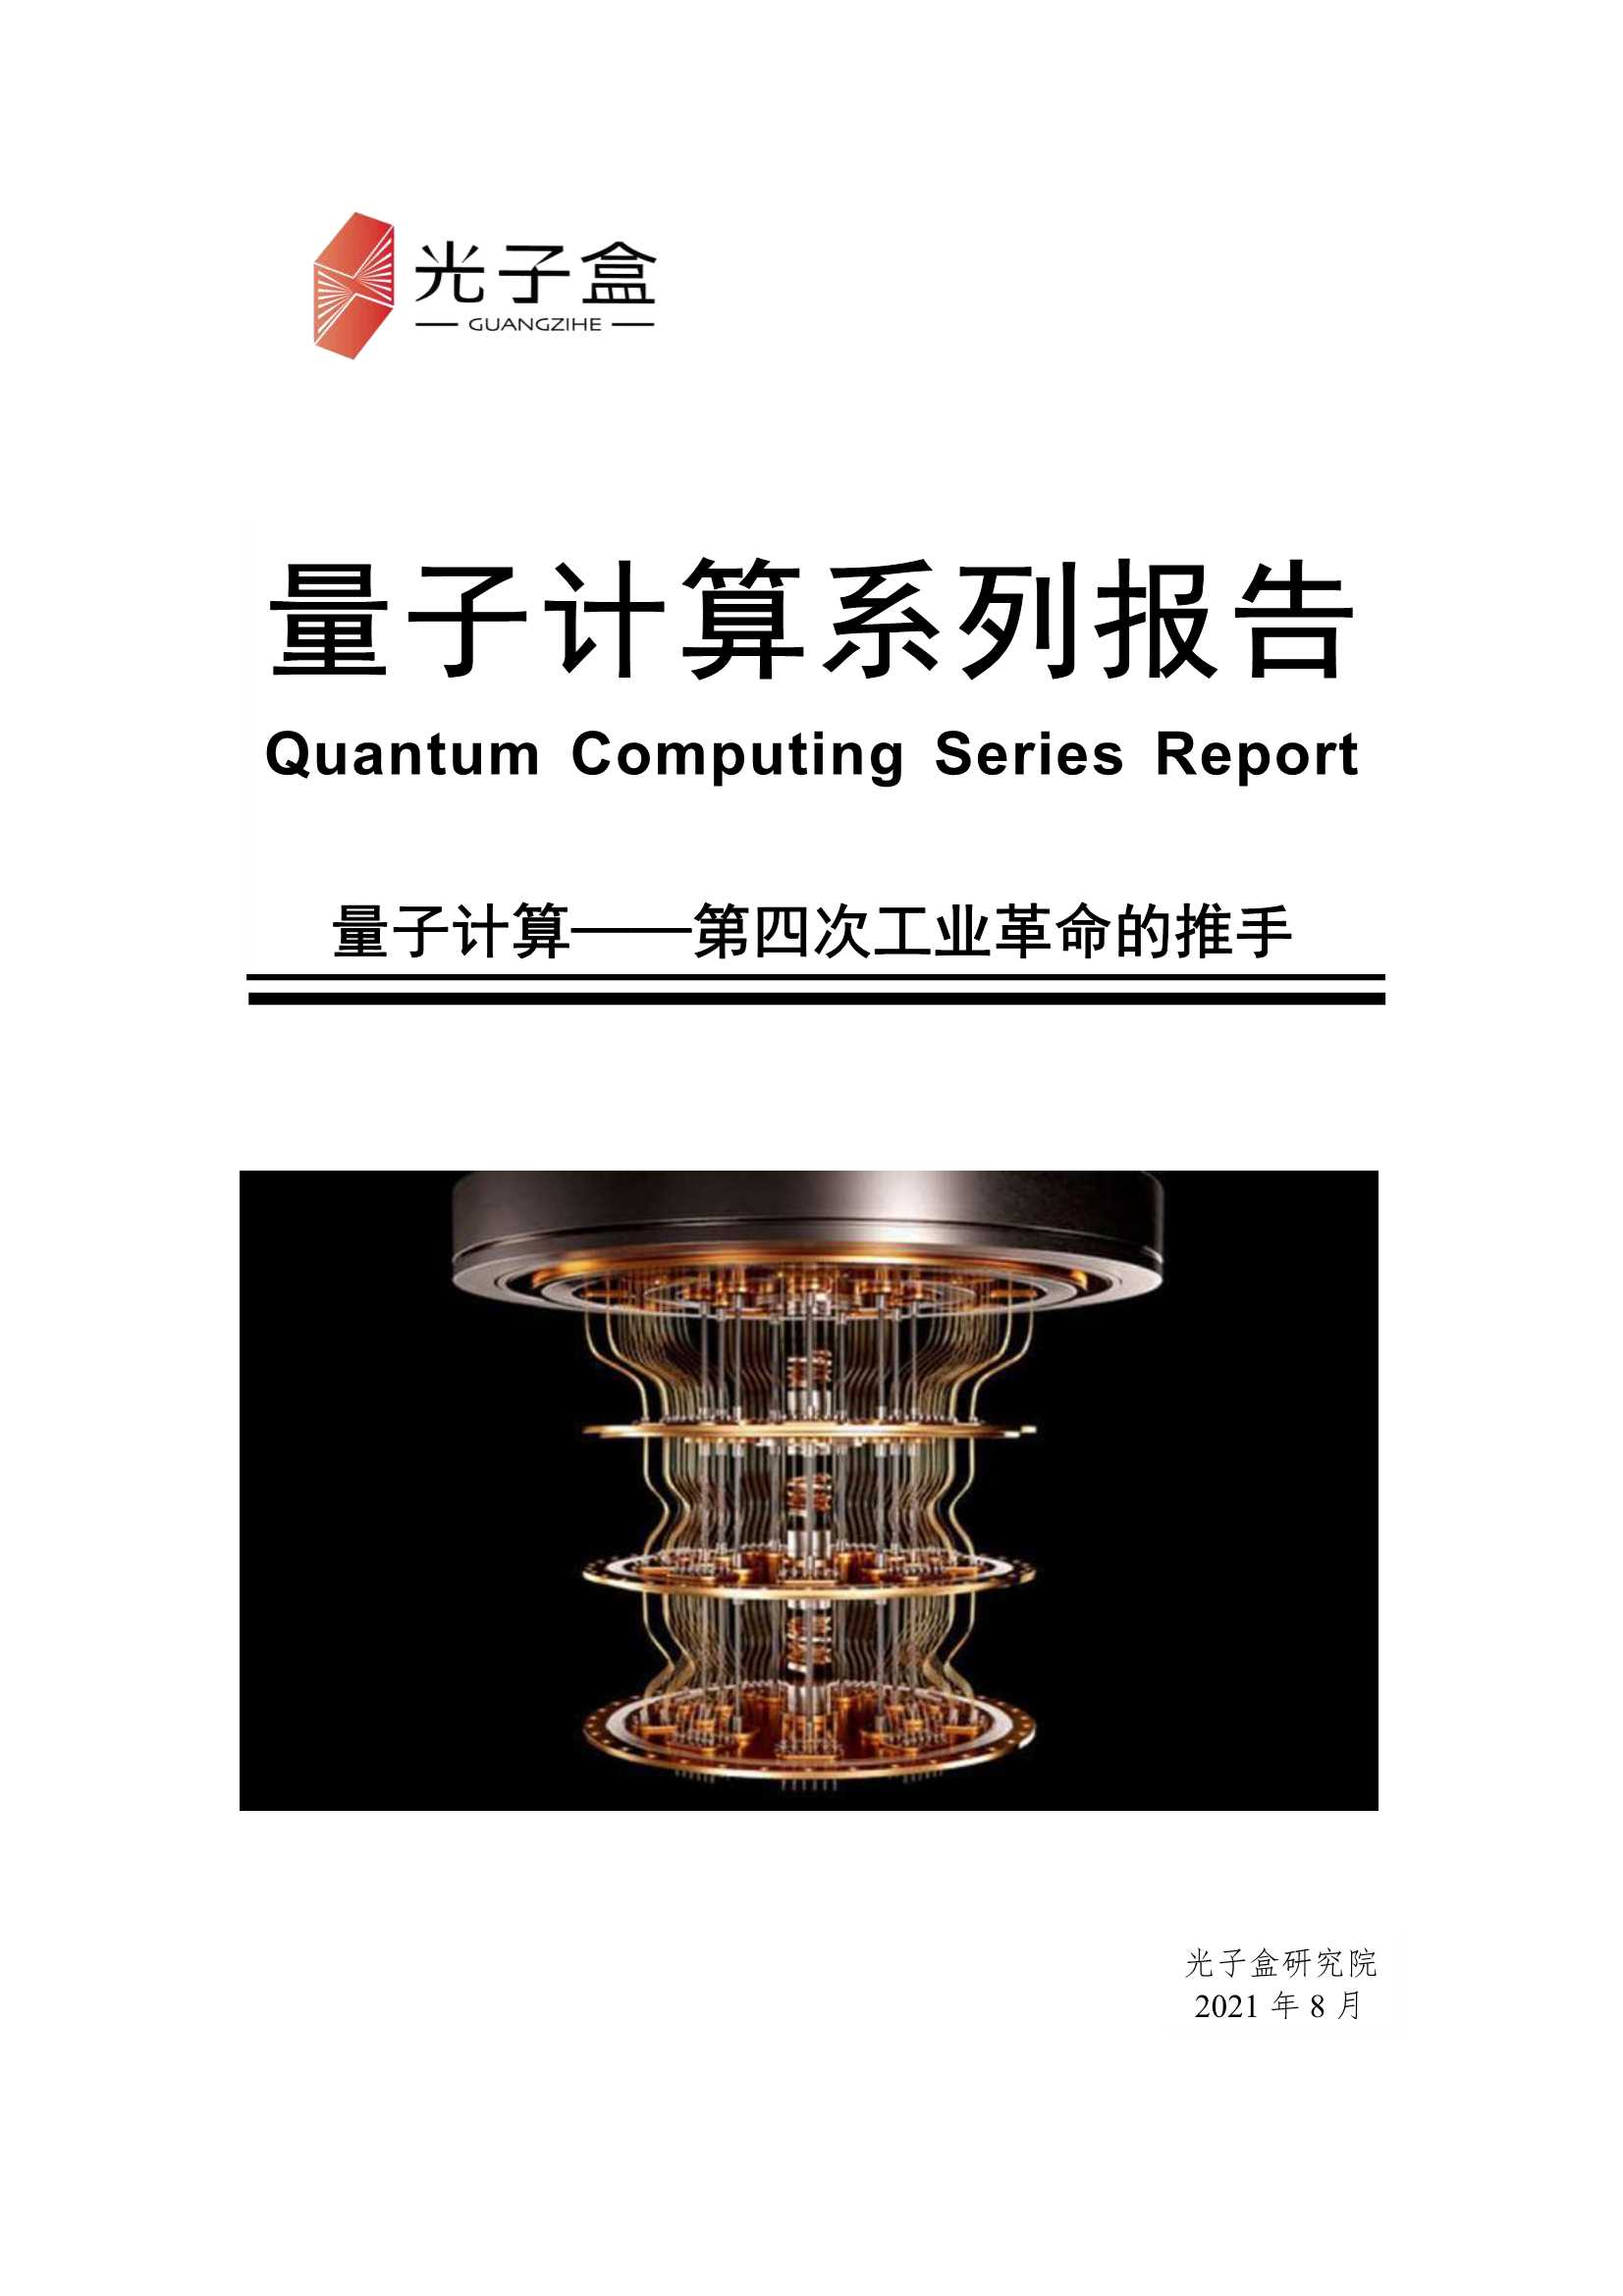 光子盒-量子计算系列报告：量子计算 第四次工业革命的推手-2021.09-36页